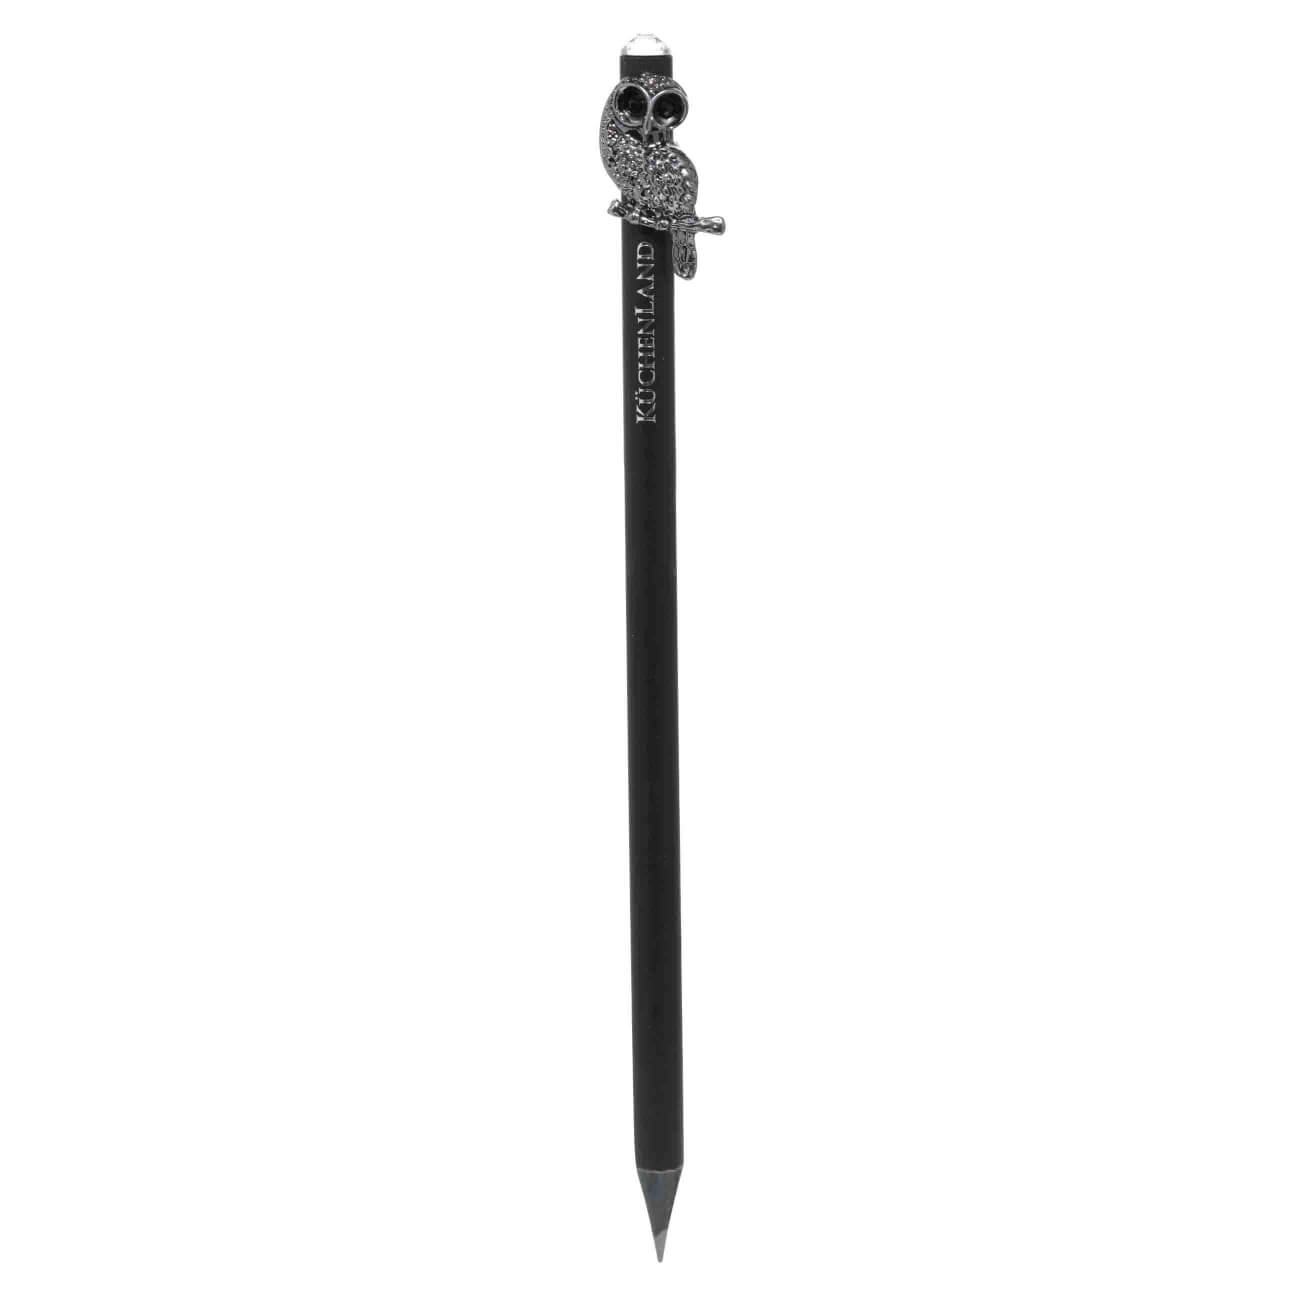 Карандаш, 18 см, чернографитный, с фигуркой, черный, Сова, Draw figure карандаш чернографитный bruynzeel burotek b